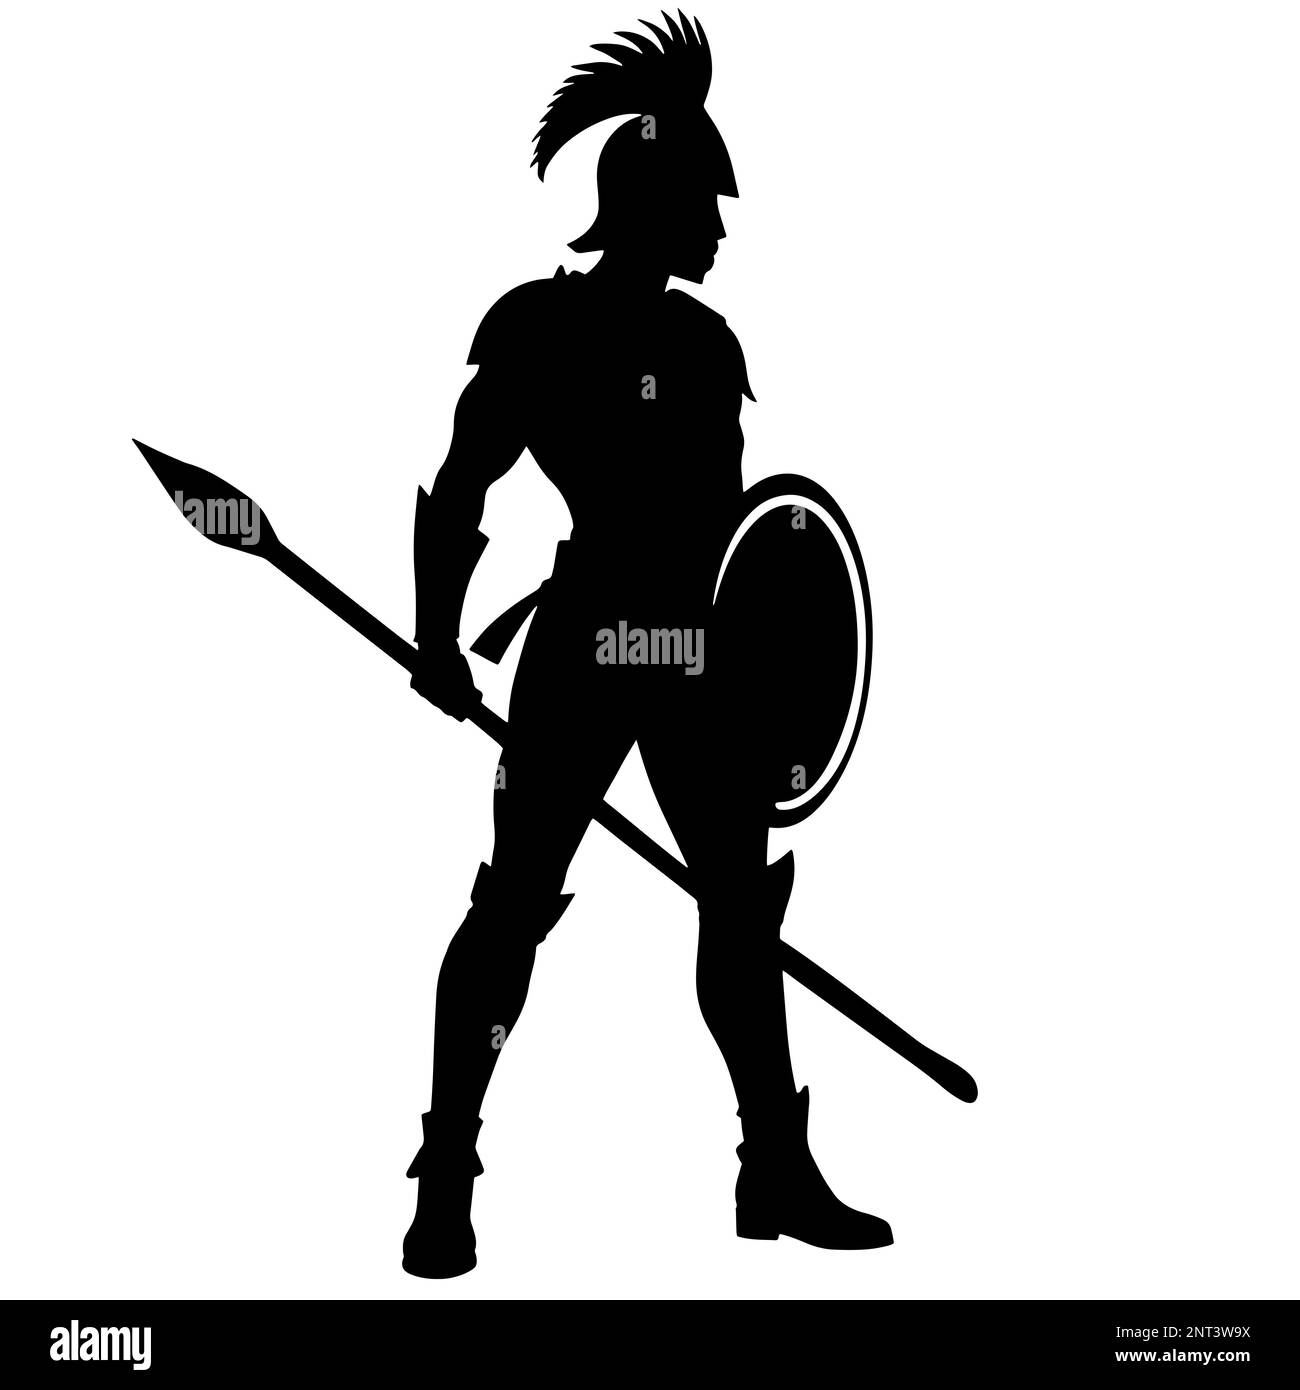 Illustration d'un guerrier spartiate dans un style noir et blanc monochrome saisissant, évoquant un sentiment de puissance Banque D'Images